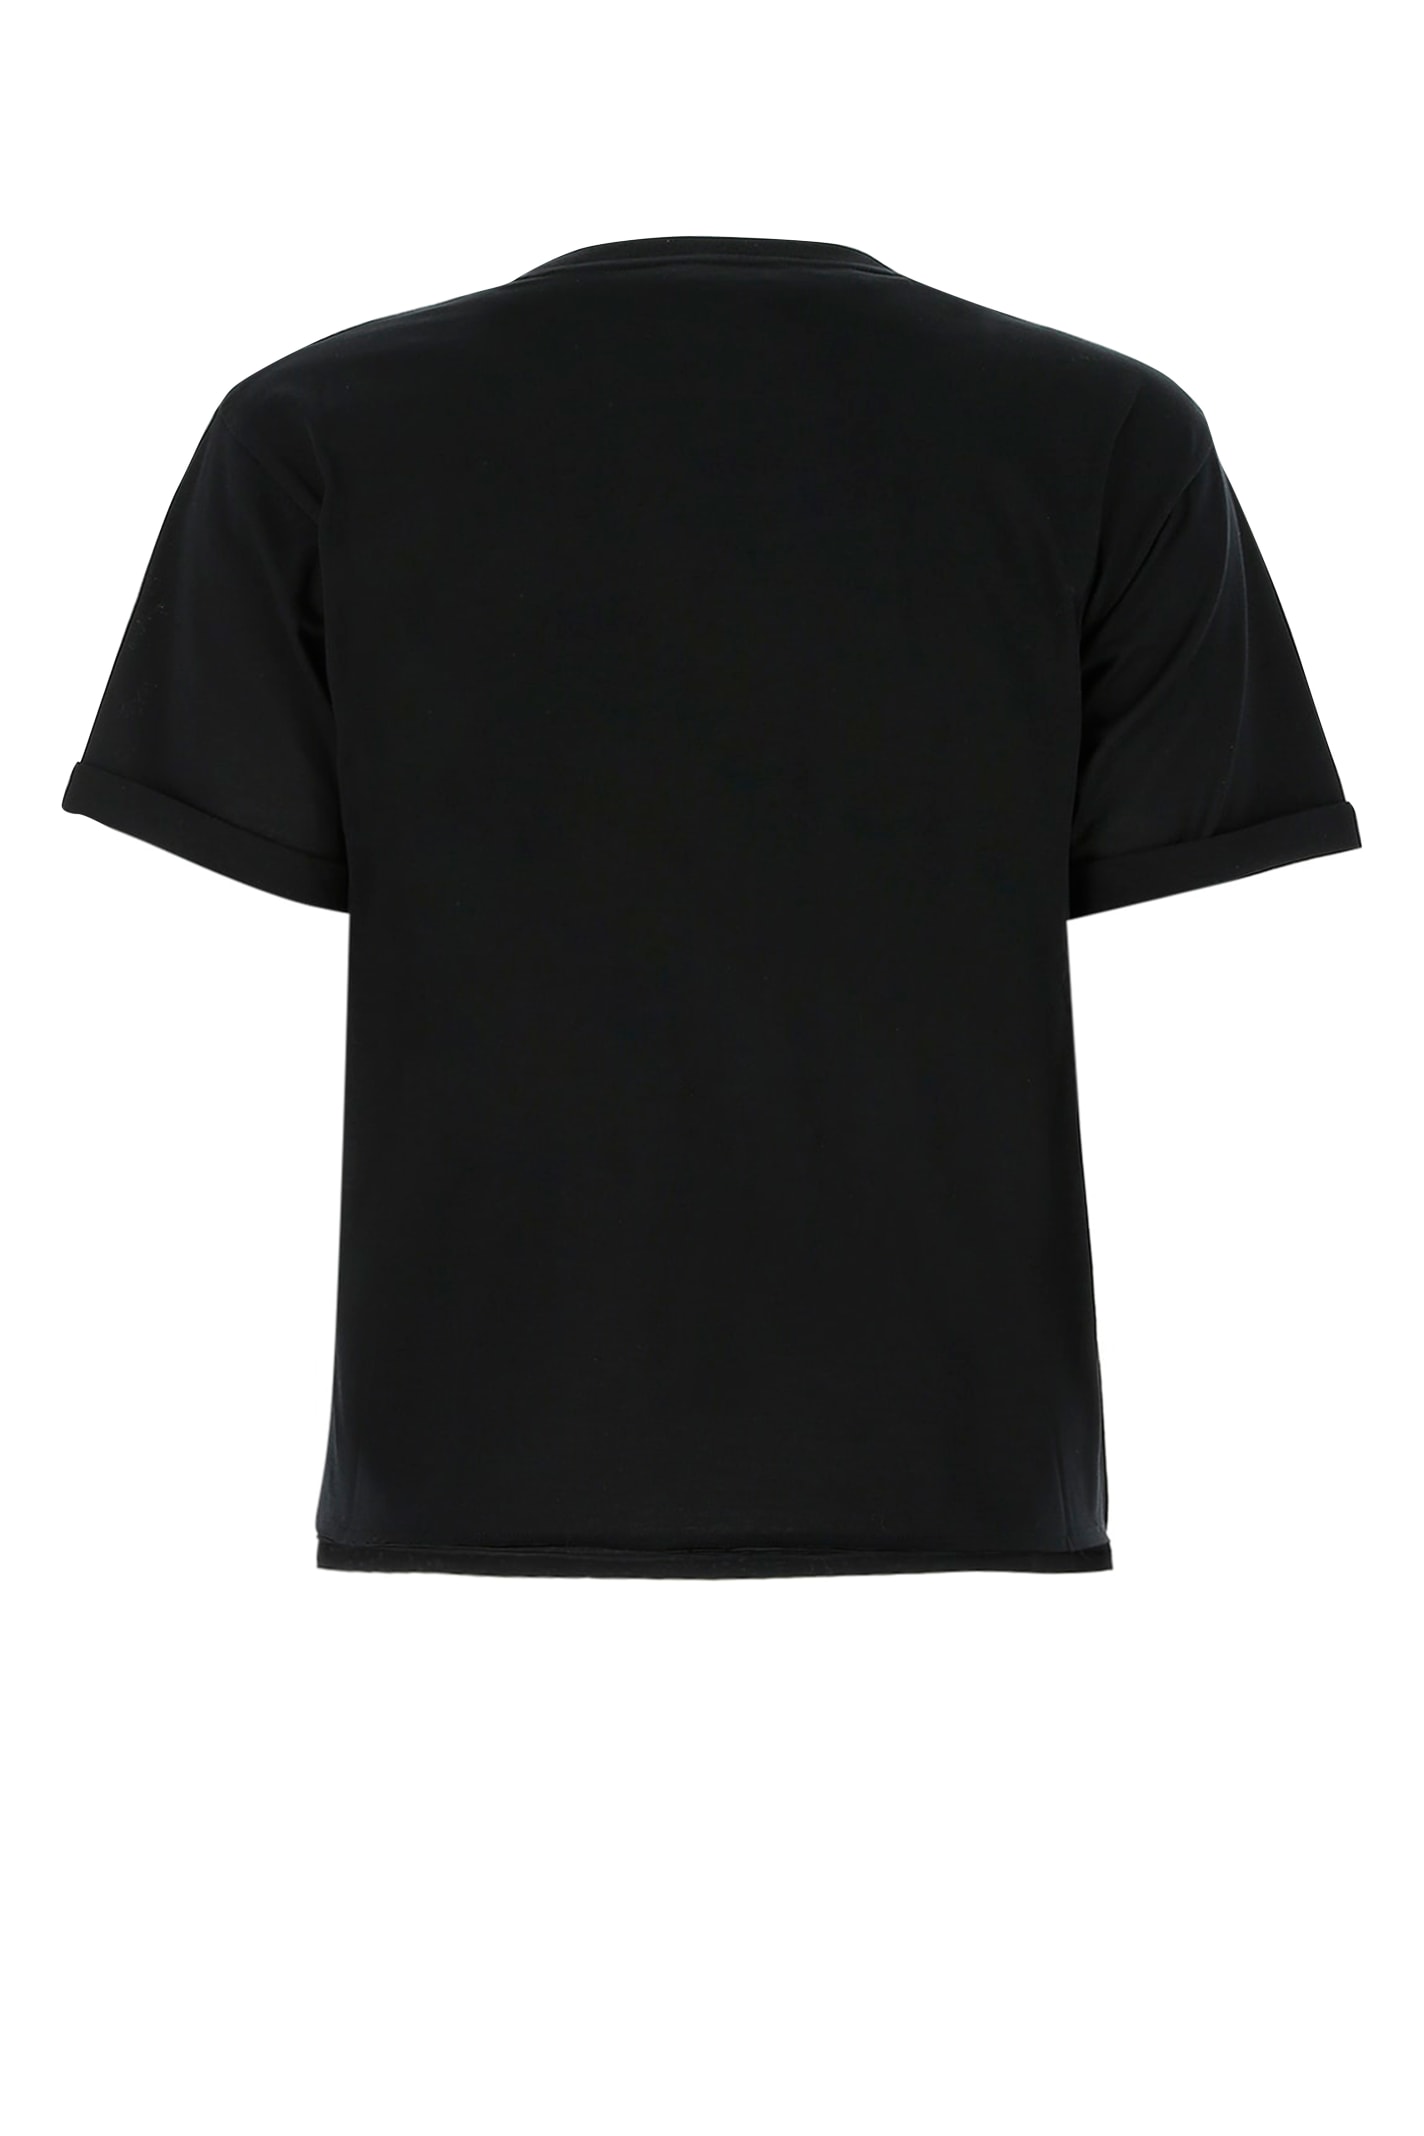 Saint Laurent Black Cotton T-shirt In 1000